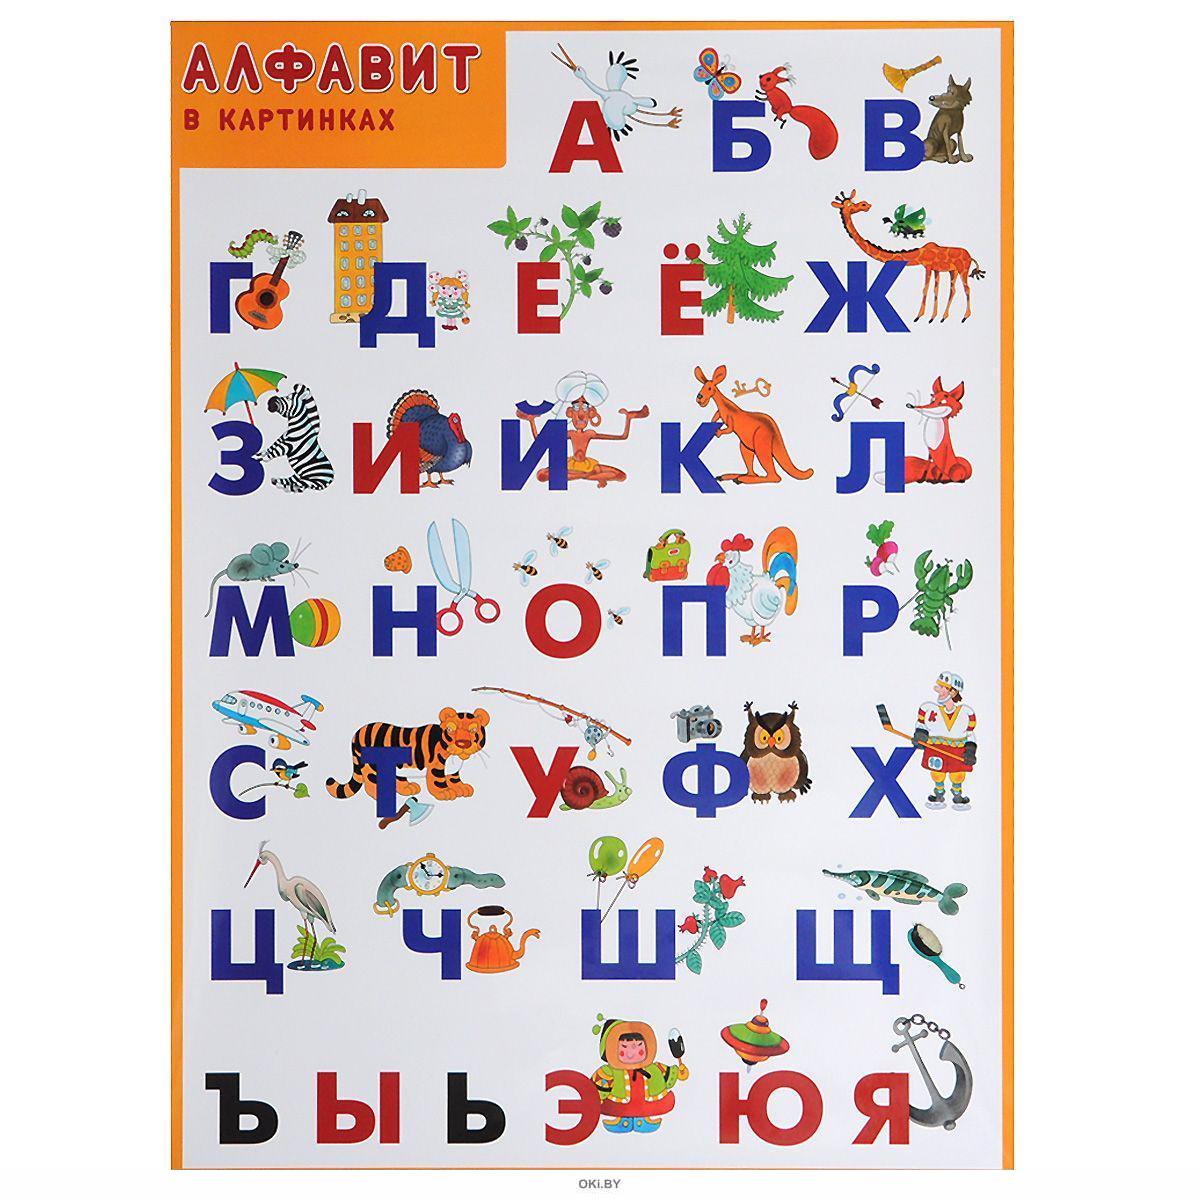 алфавит русский фото по буквам для детей